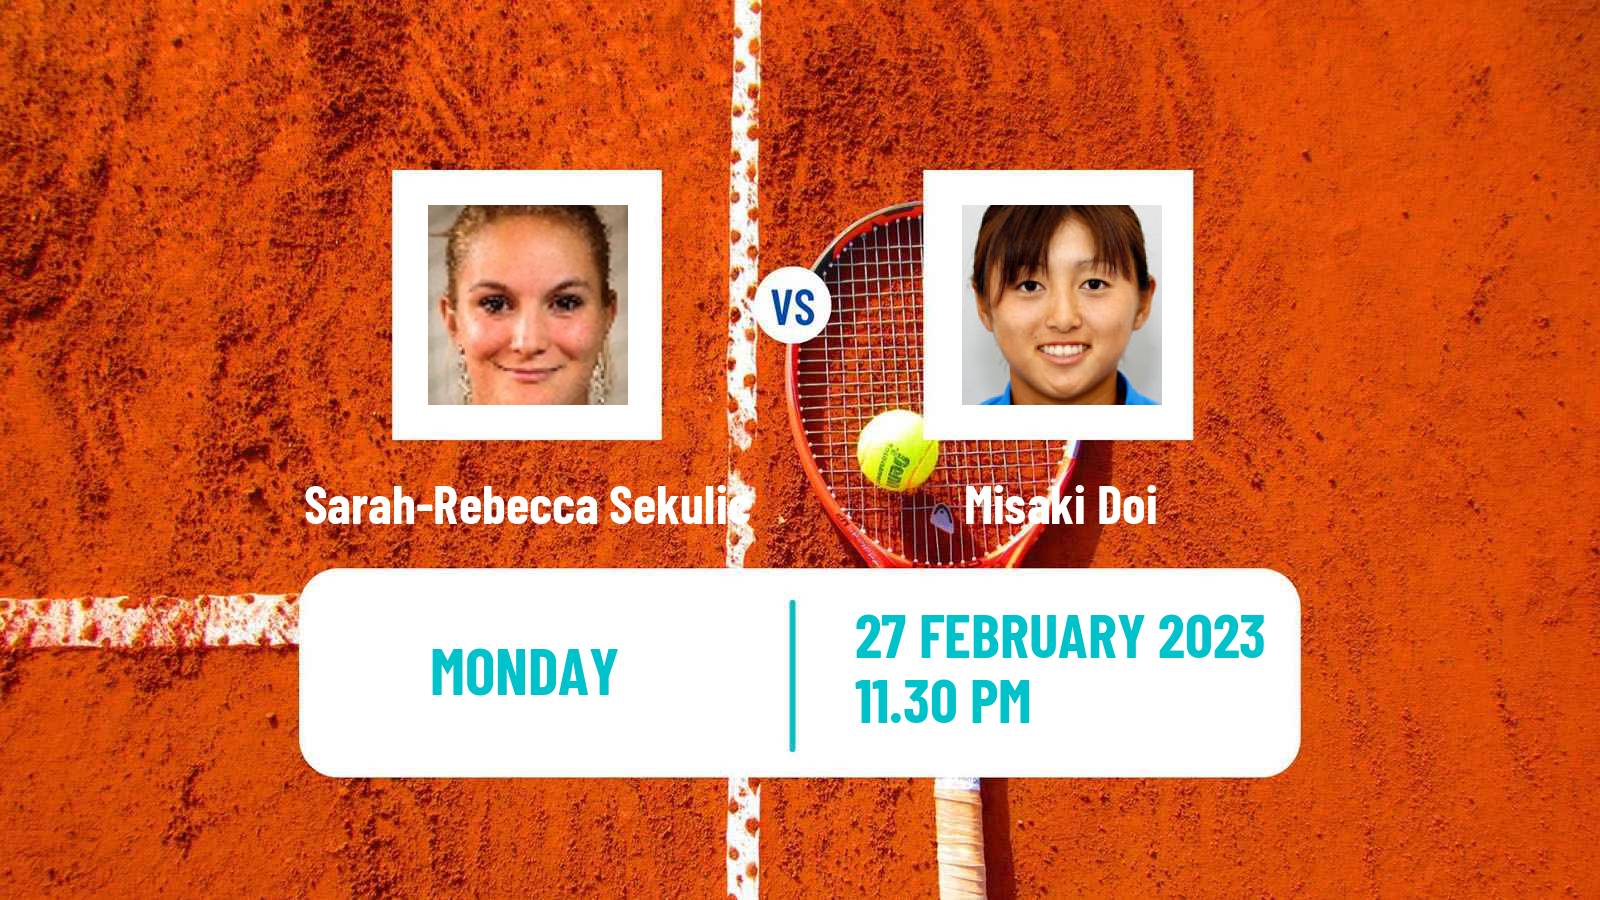 Tennis ITF Tournaments Sarah-Rebecca Sekulic - Misaki Doi